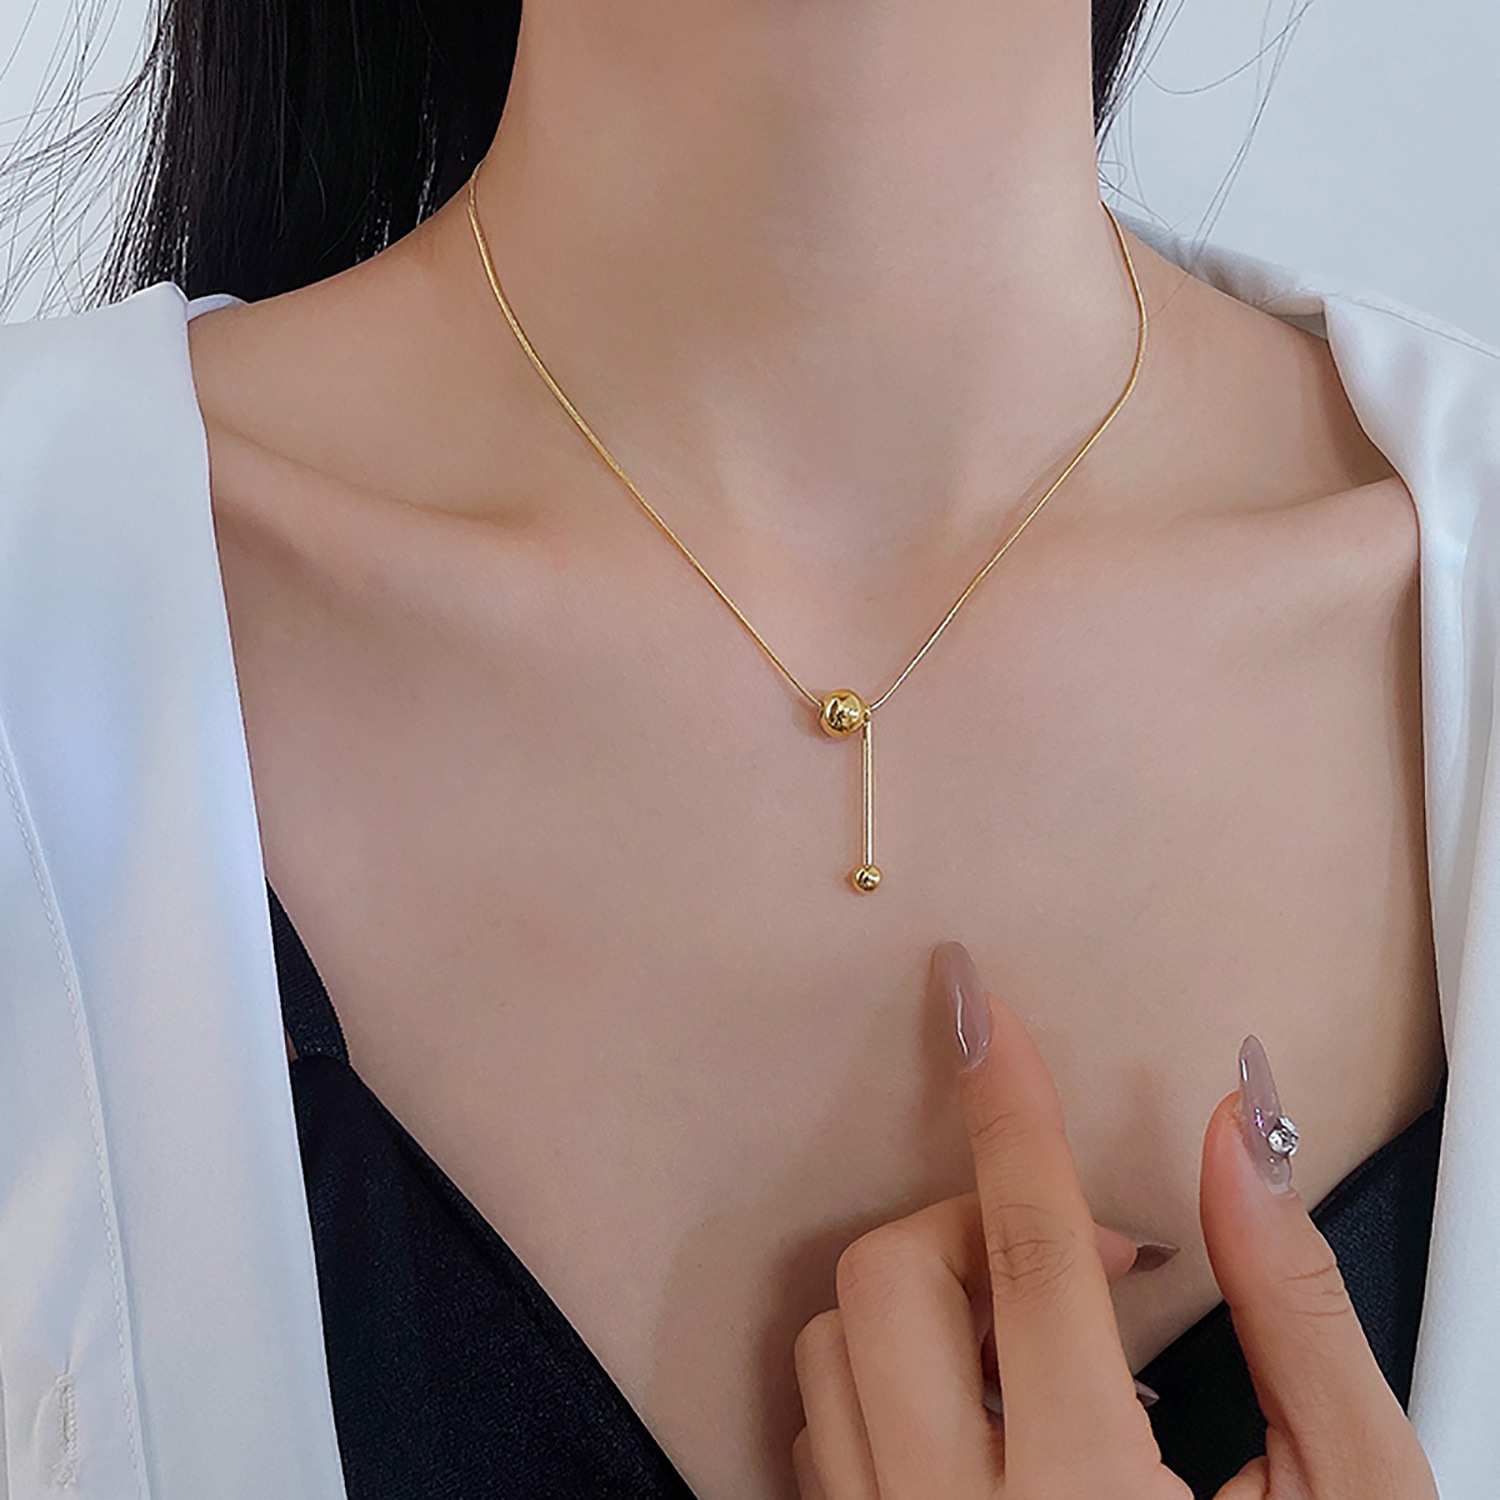 Retro Stil 18K Gold berzogene Edelstahl YGeformt Perle Anhnger Halskettepicture1